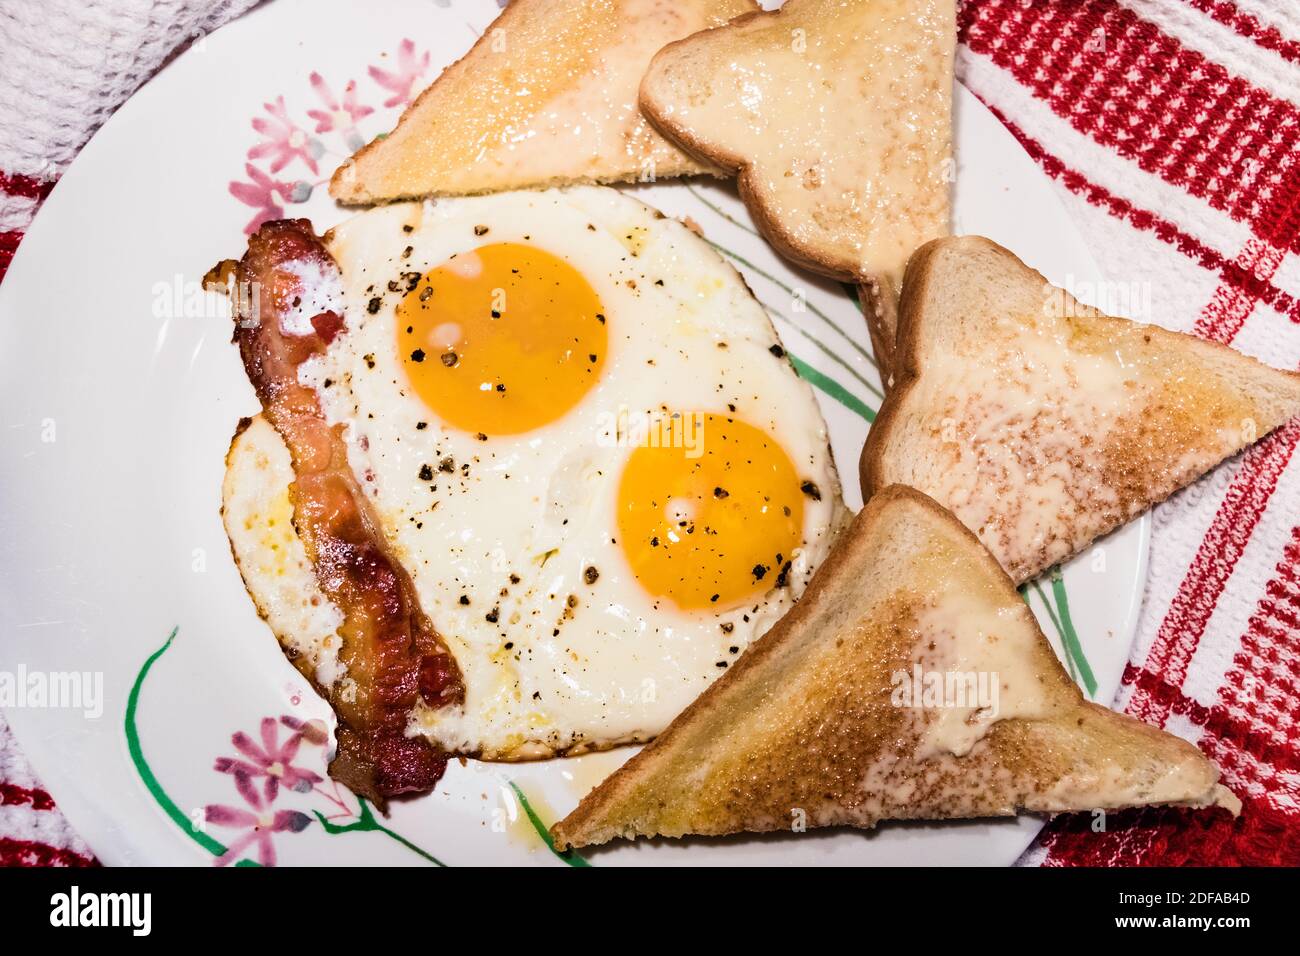 Nahaufnahme der sonnigen Seite up Eier mit Speck und Brot auf der Seite. Teller mit Blumen Design. Hintergrund - weiße und rote Tischdecke Stockfoto